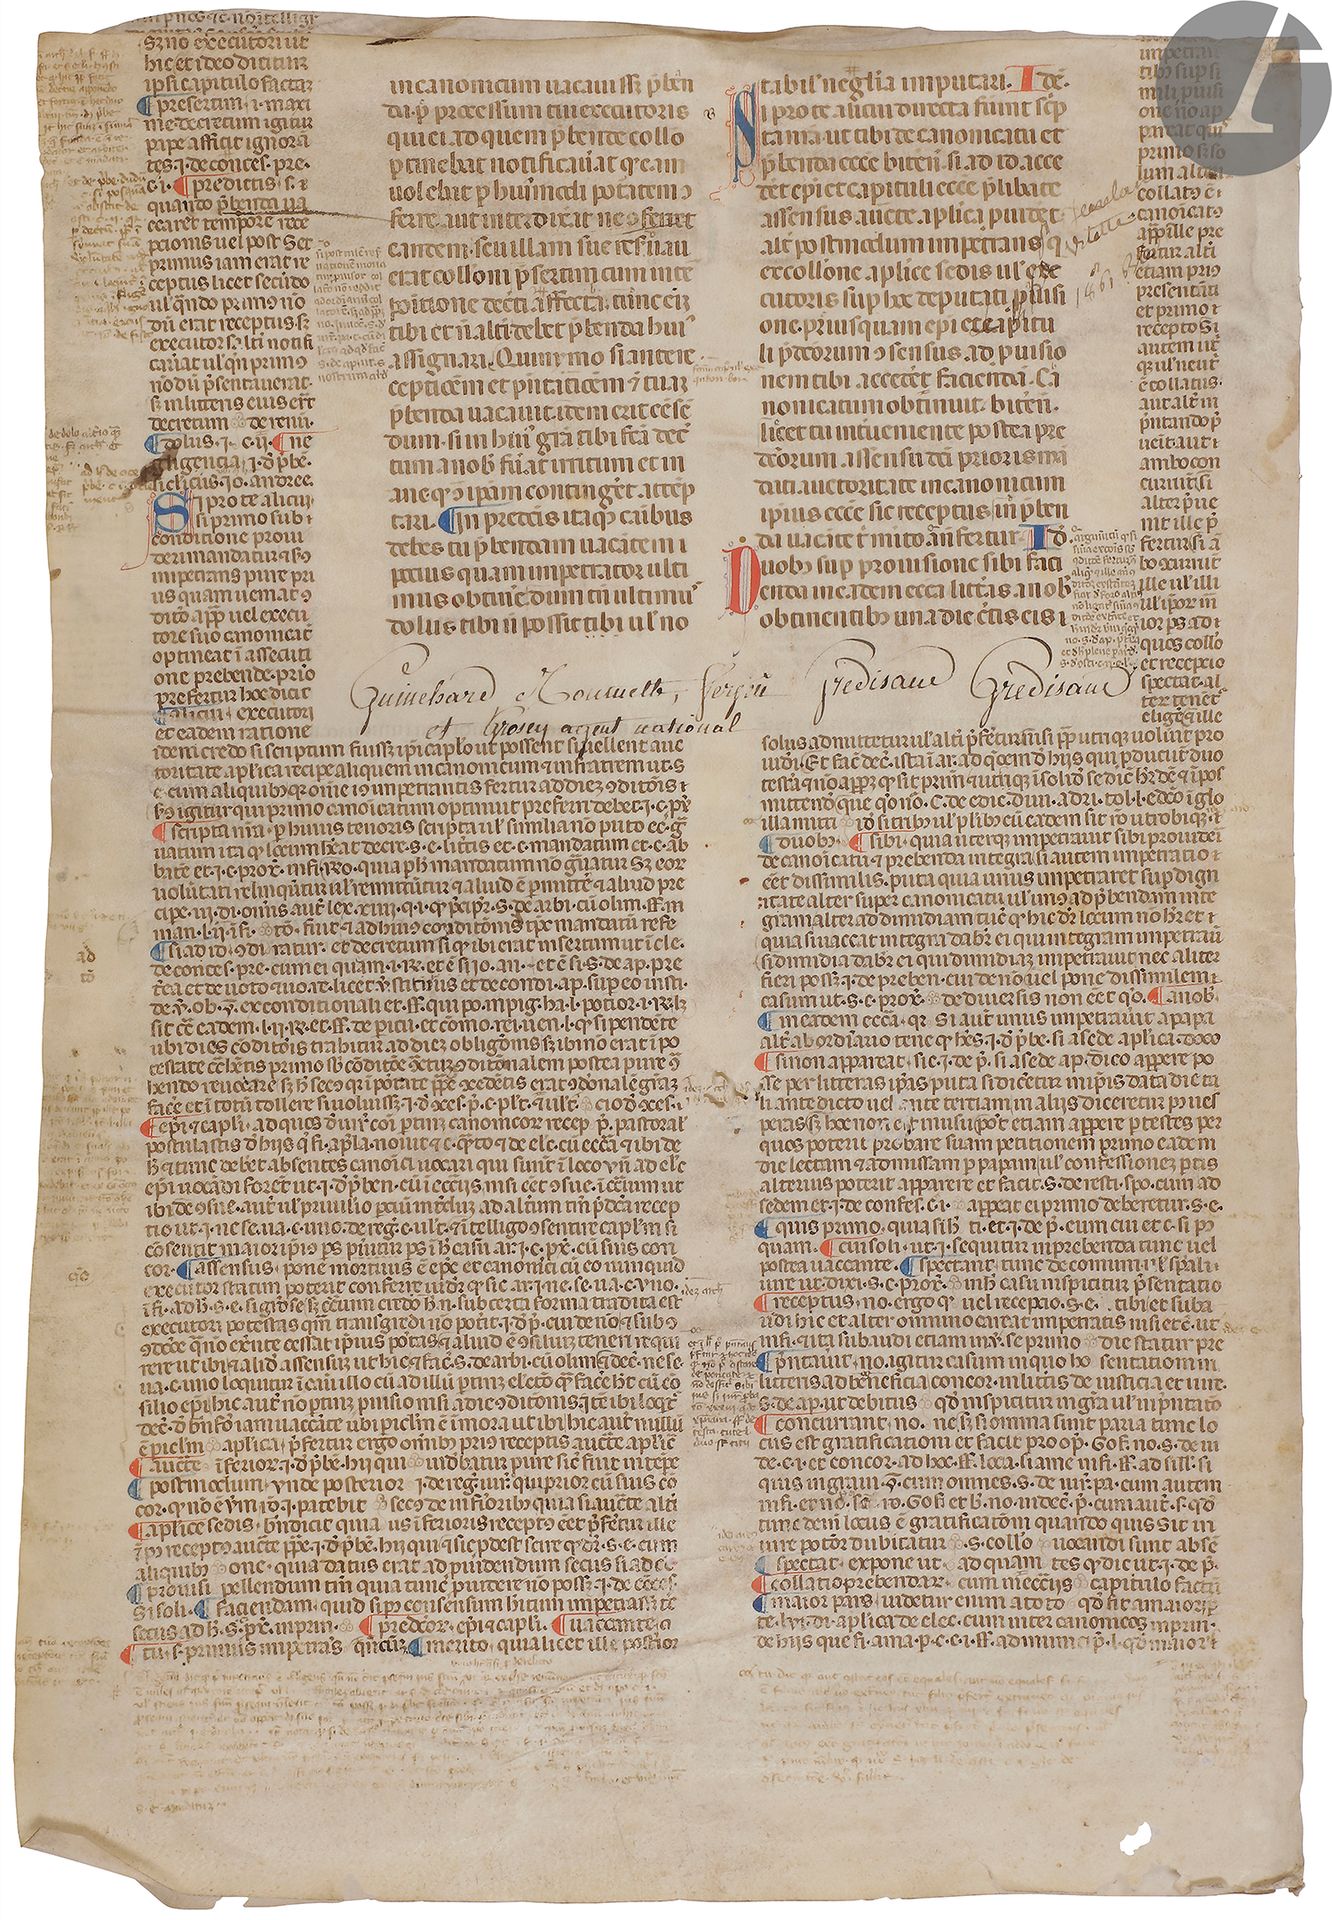 Null [LEY DEL CANON]. BONIFACIO VIII]
Folleto manuscrito del Sexteto de Bonifaci&hellip;